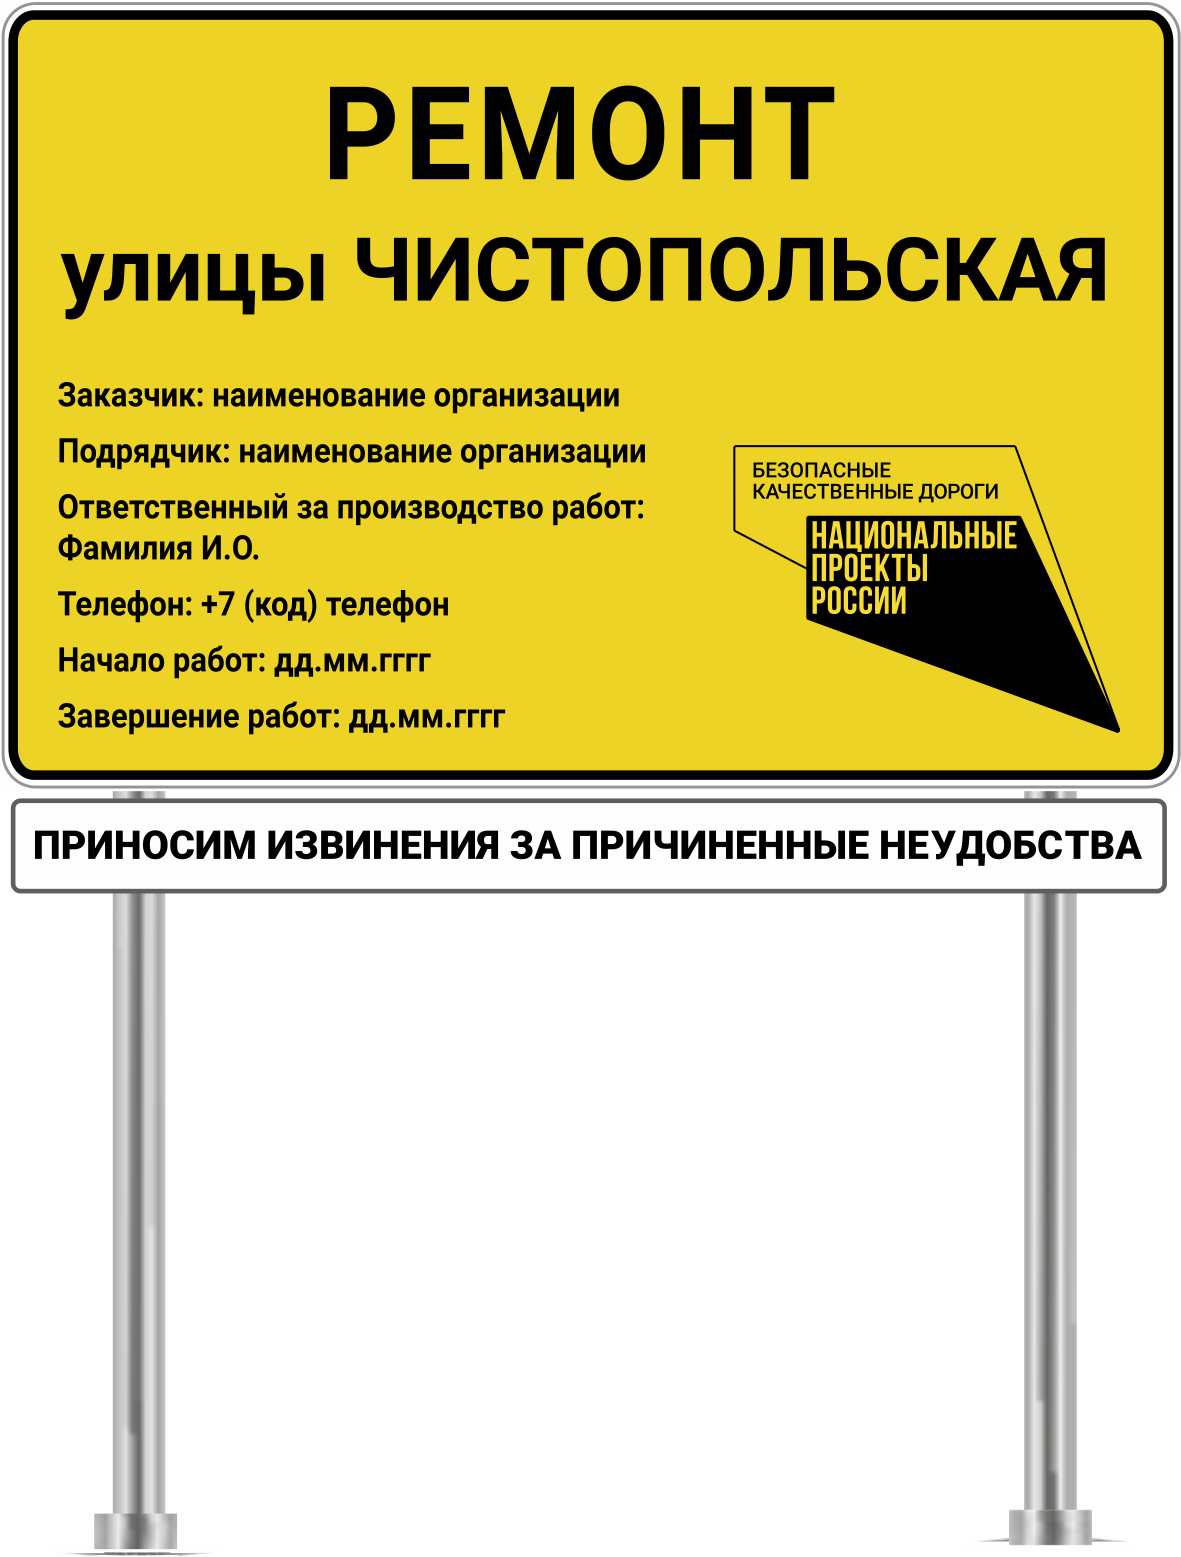 Информационный щит на объектах национального проекта “Безопасные и качественные автомобильные дороги” городские объекты